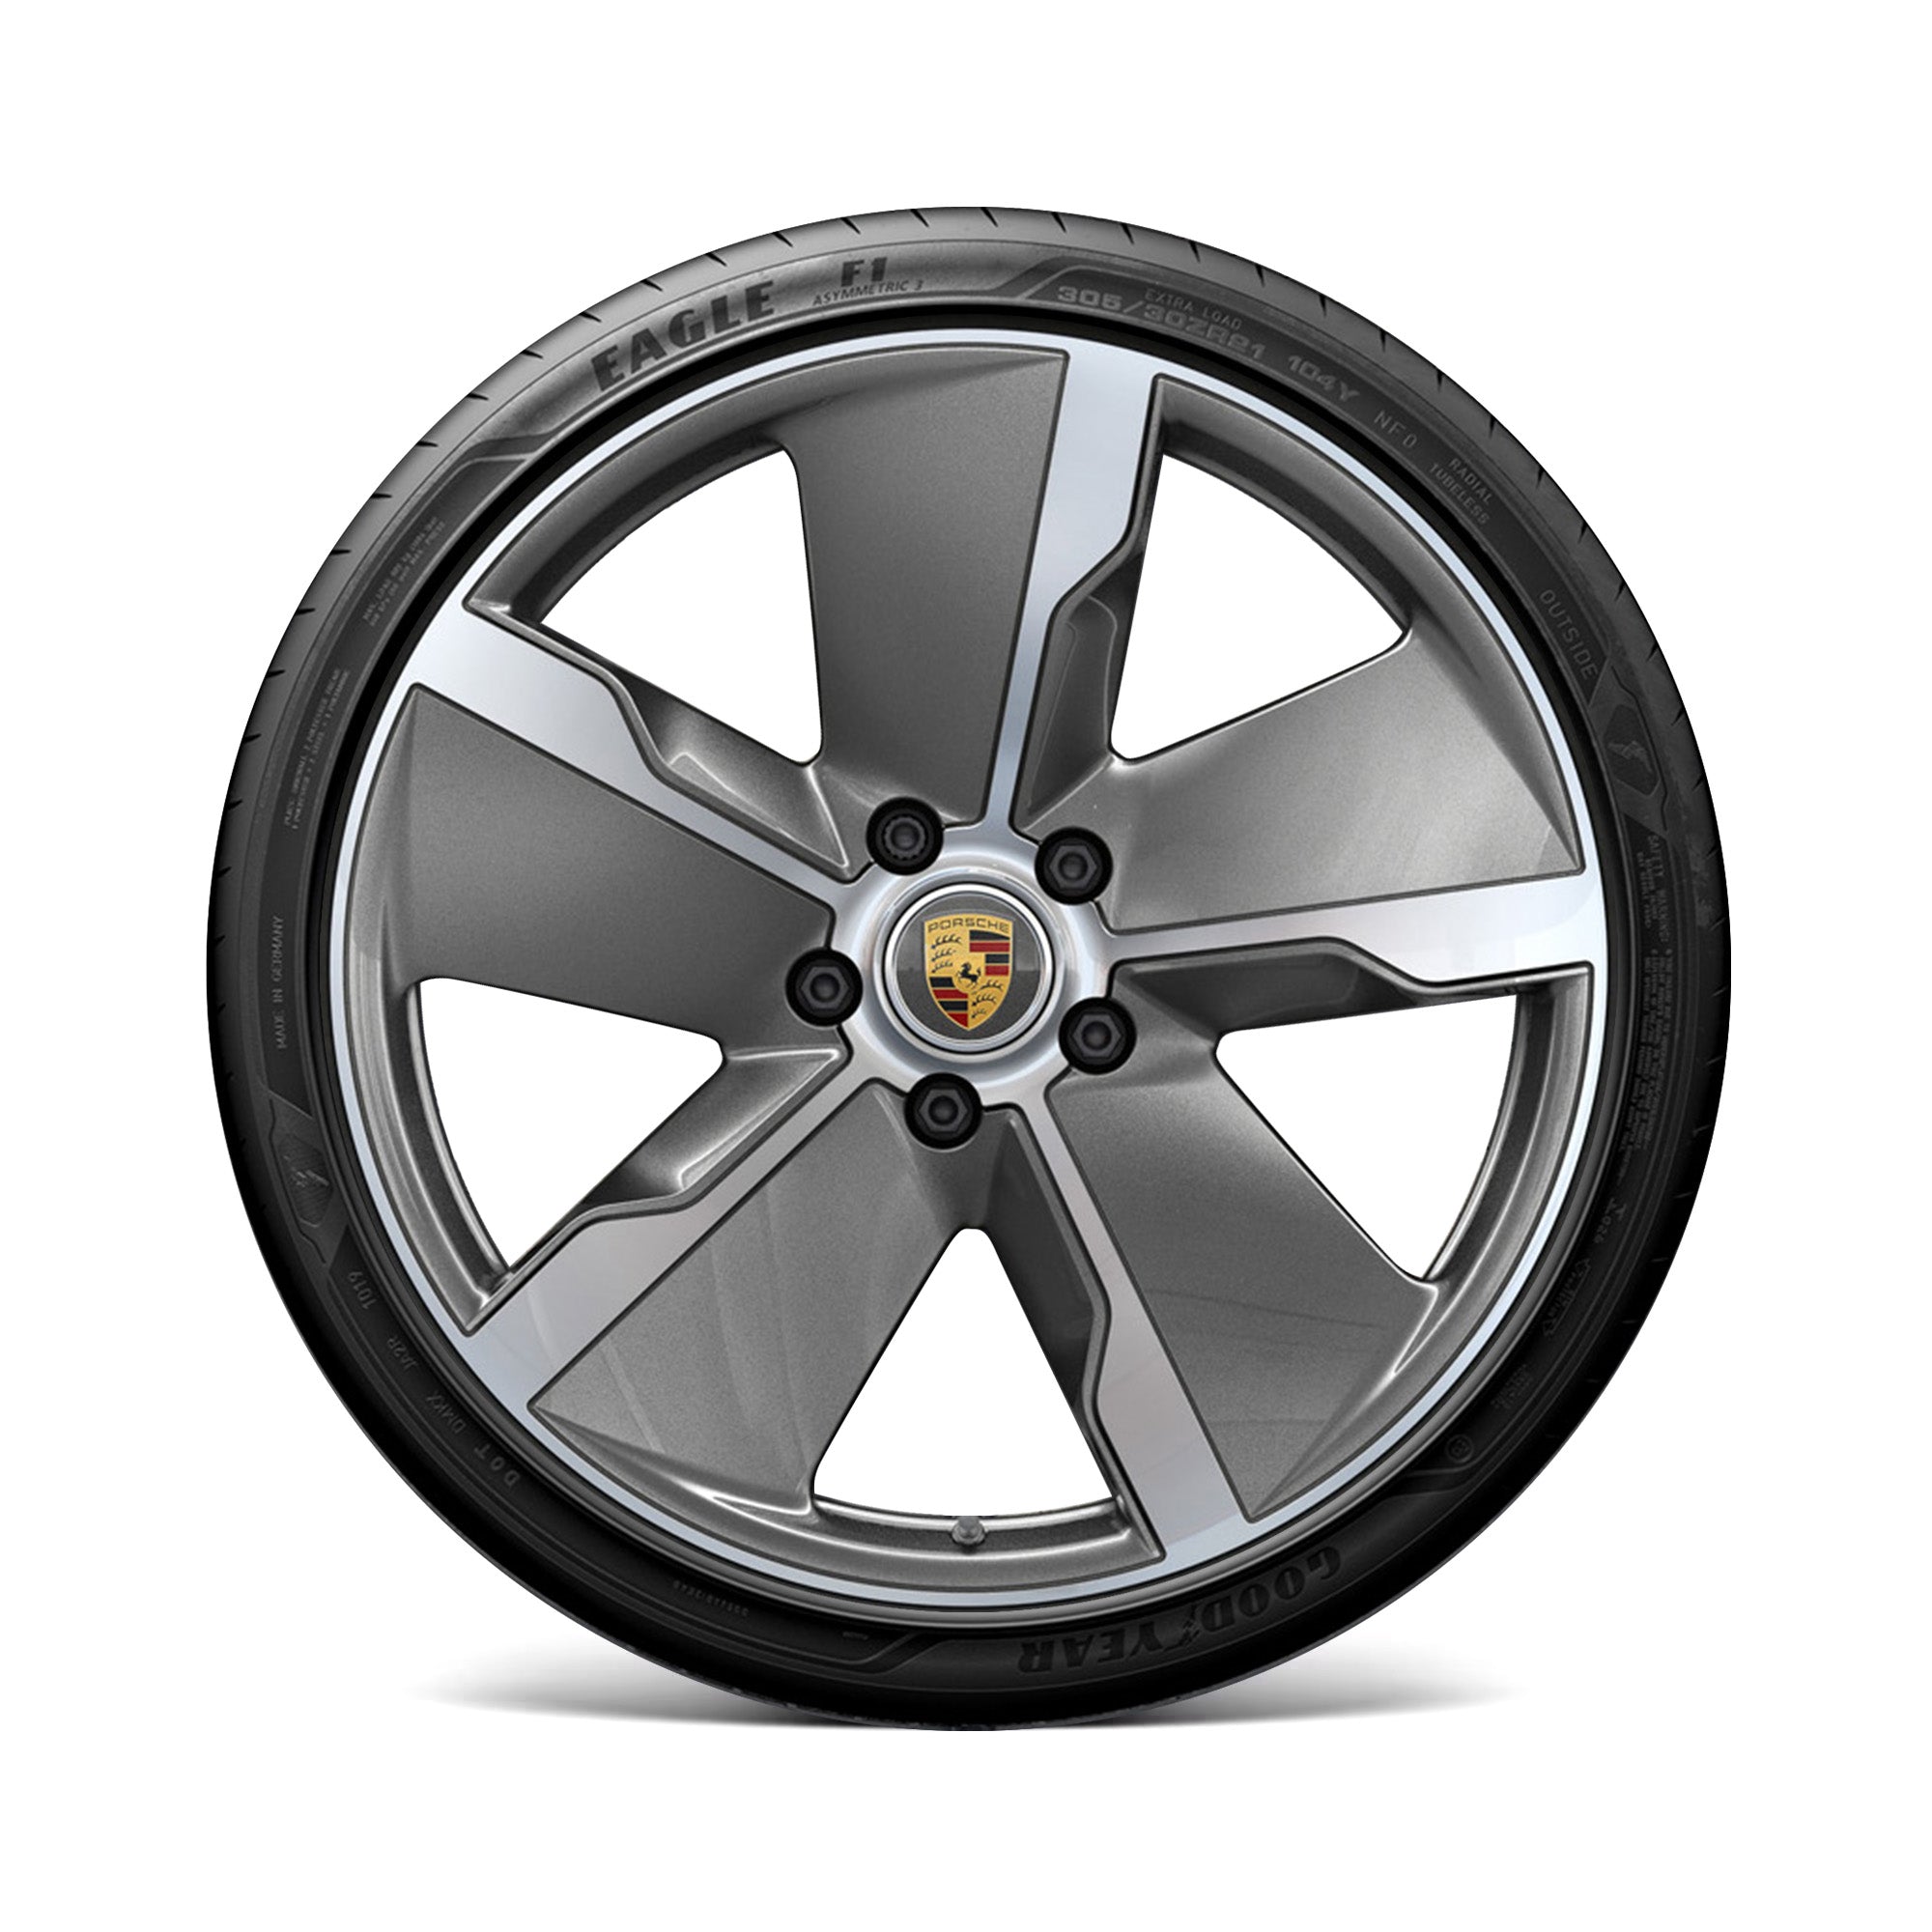 21 inch Porsche Taycan Exclusive Design Wheel